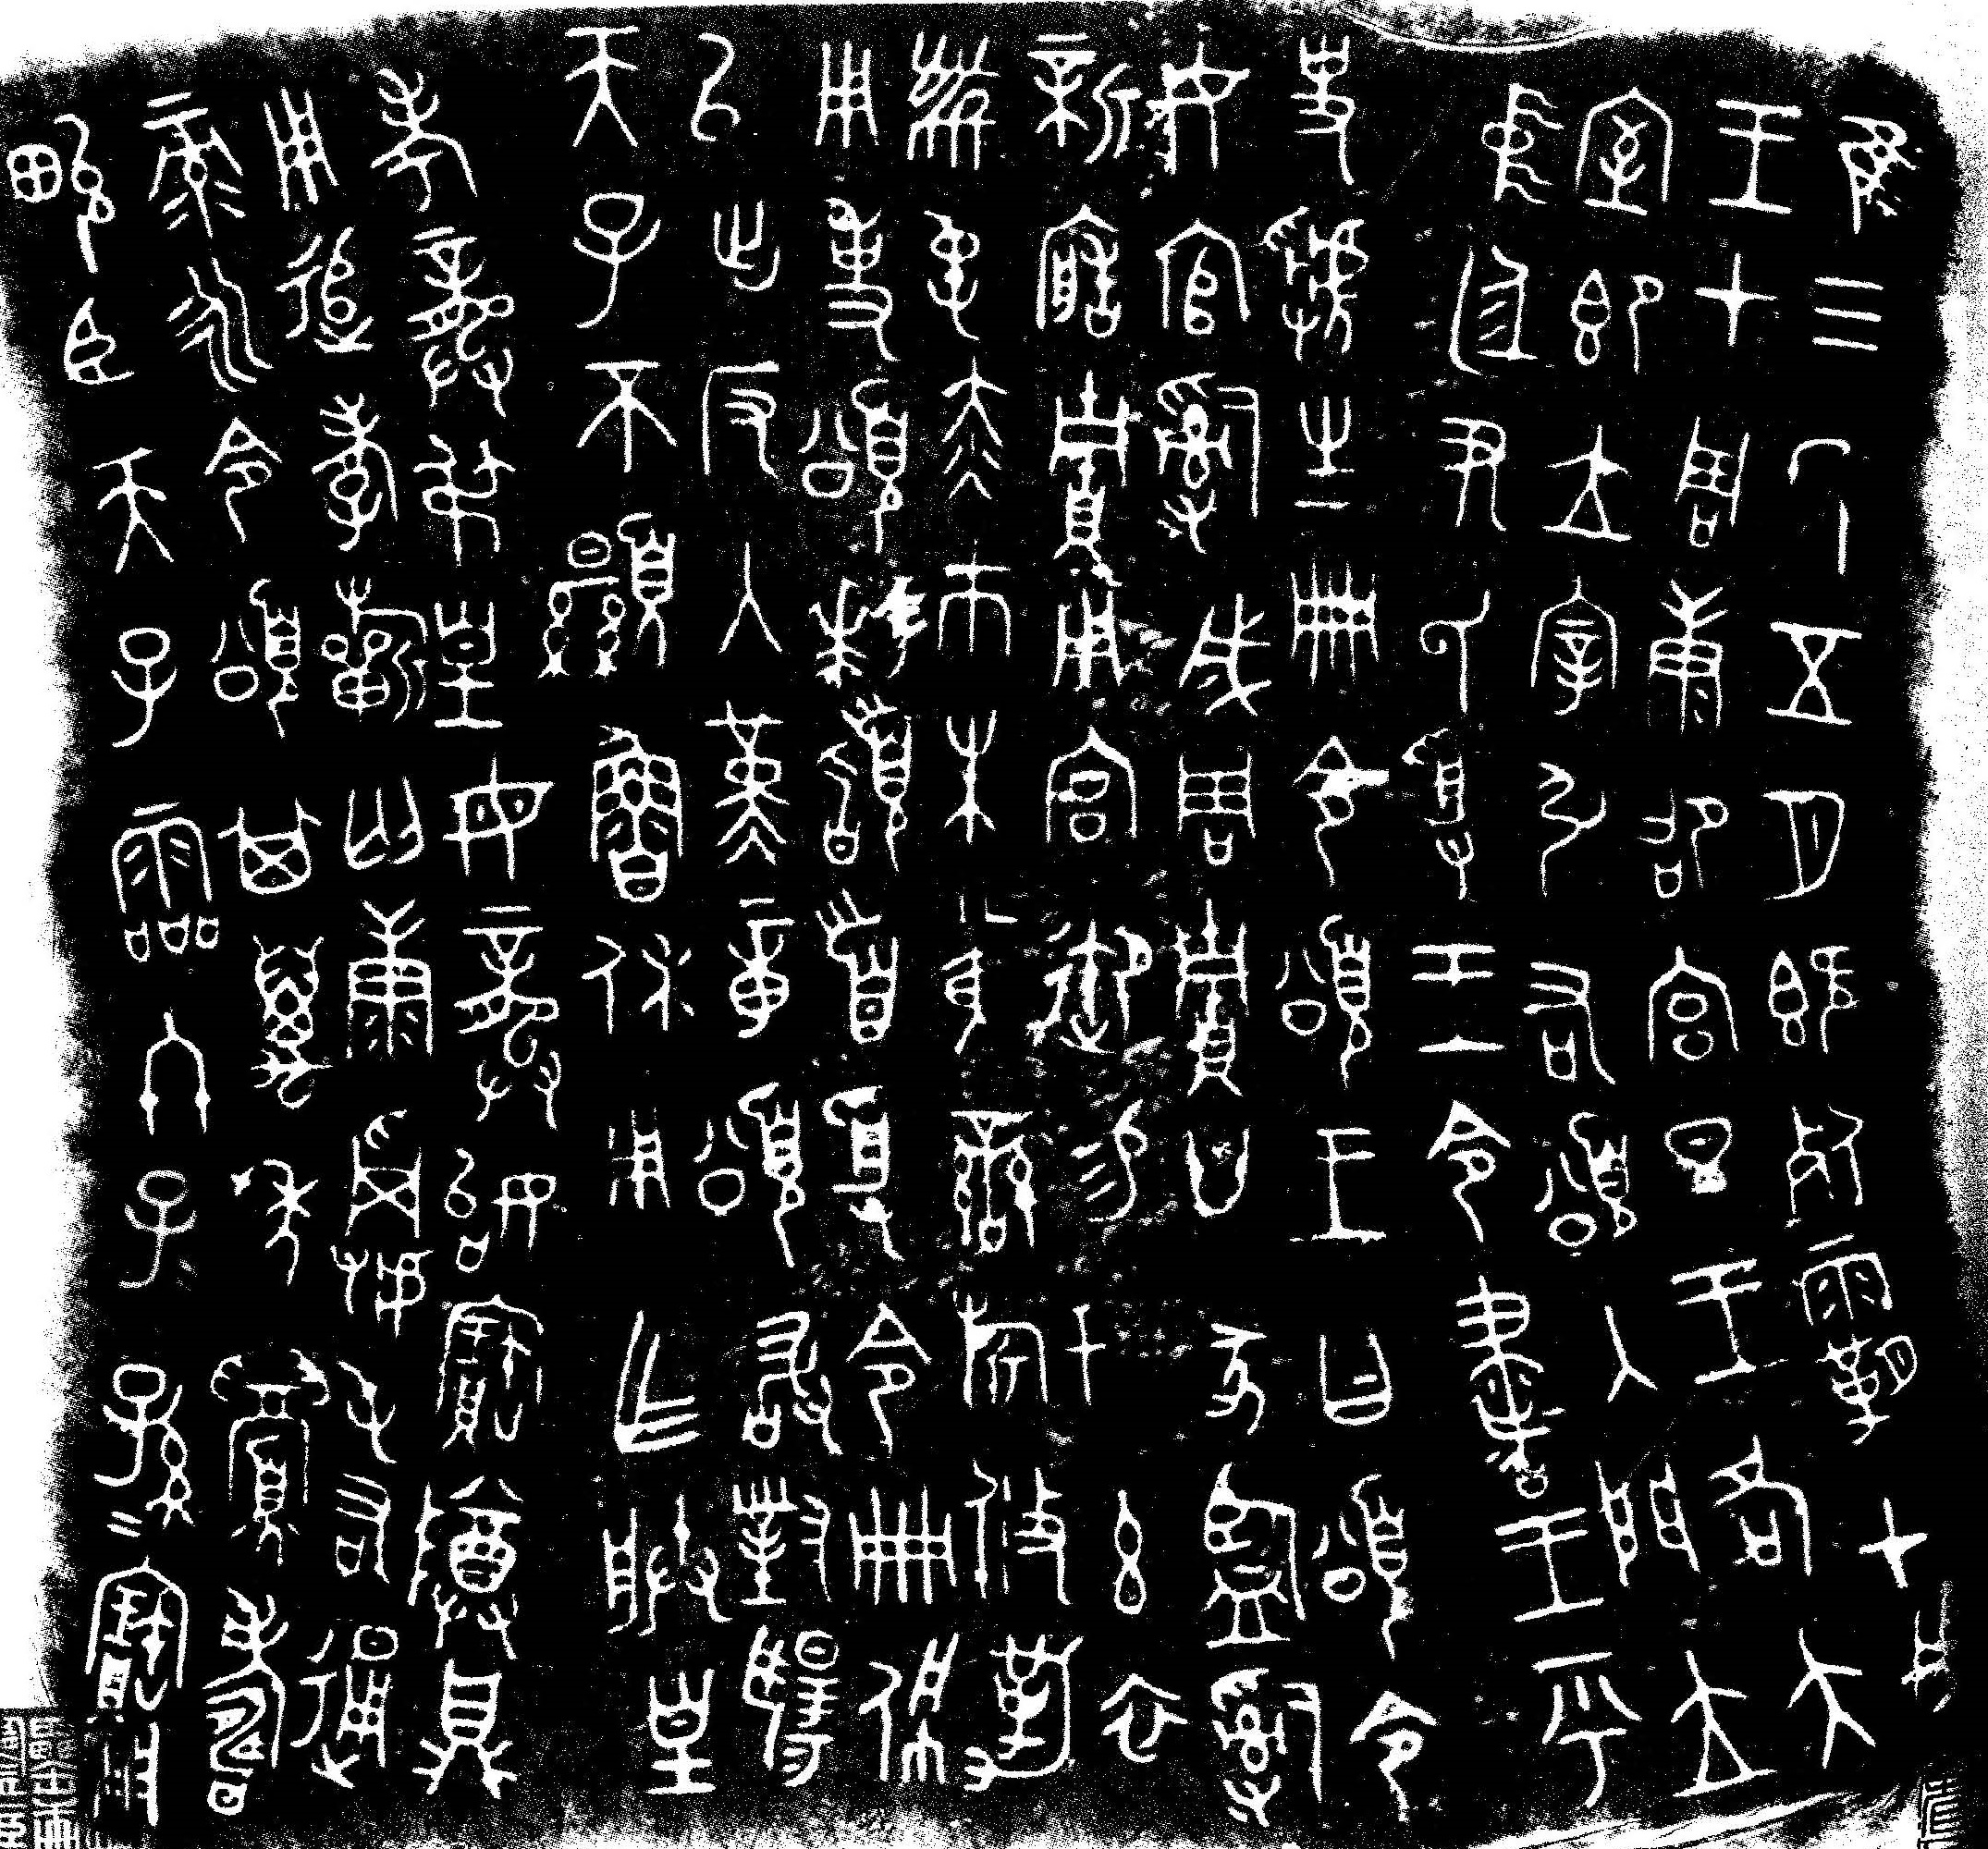 Иероглифическая письменность древнего Китая